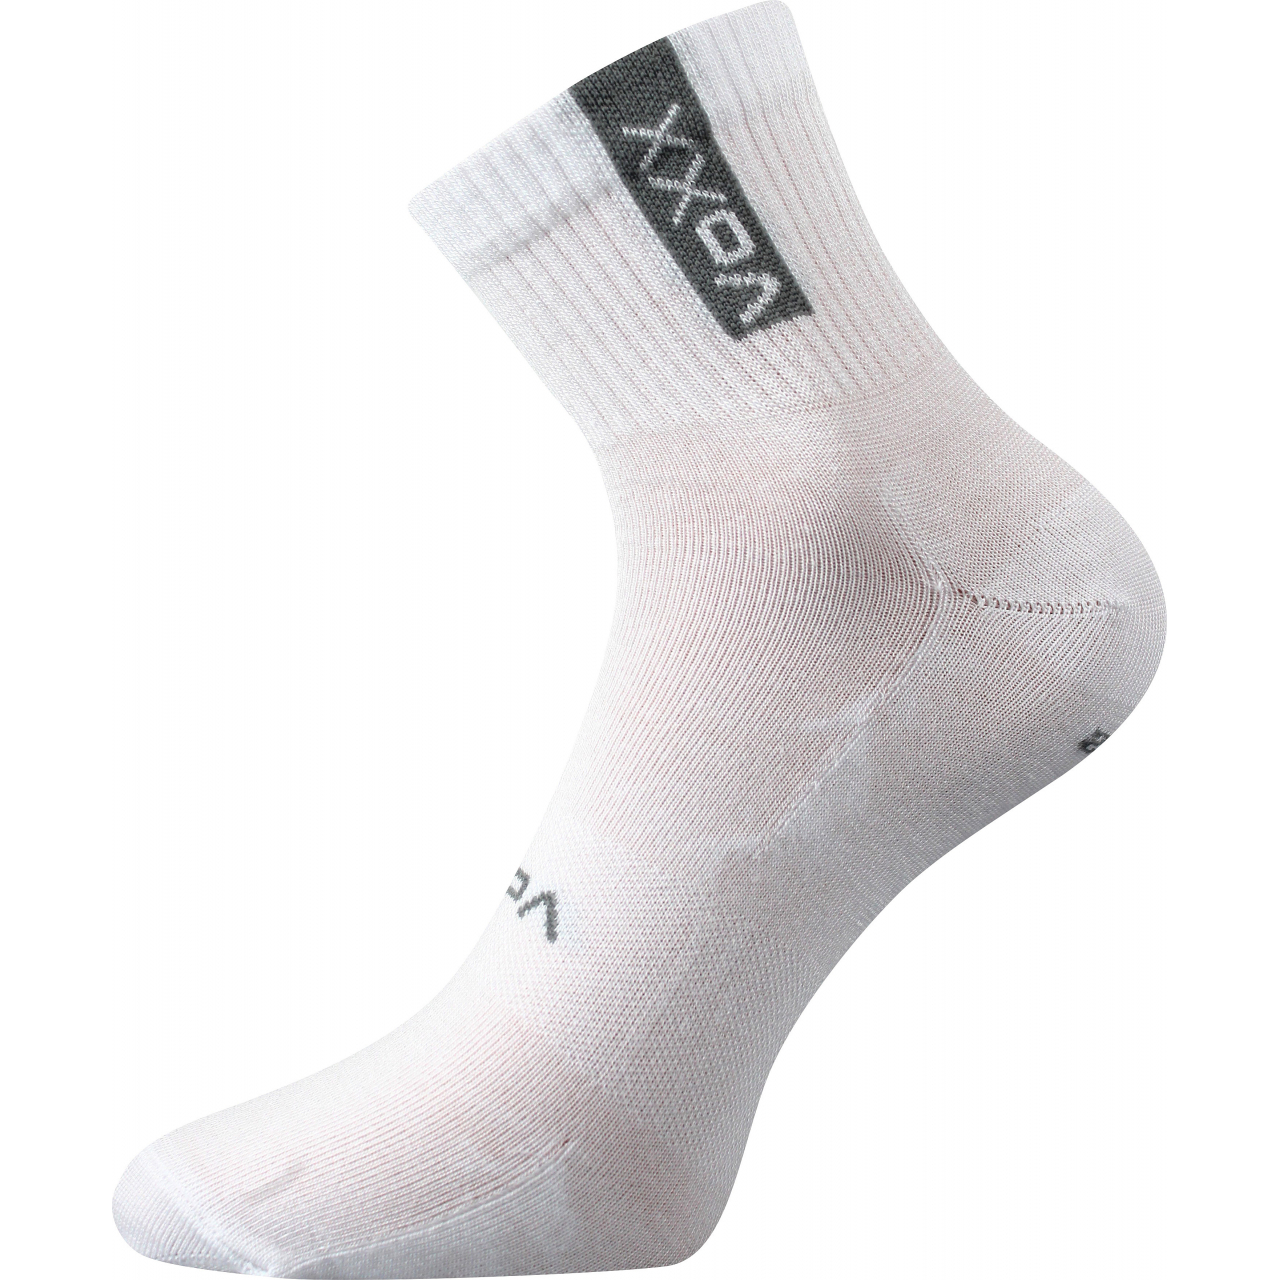 Ponožky sportovní unisex Voxx Brox - bílé, 47-50